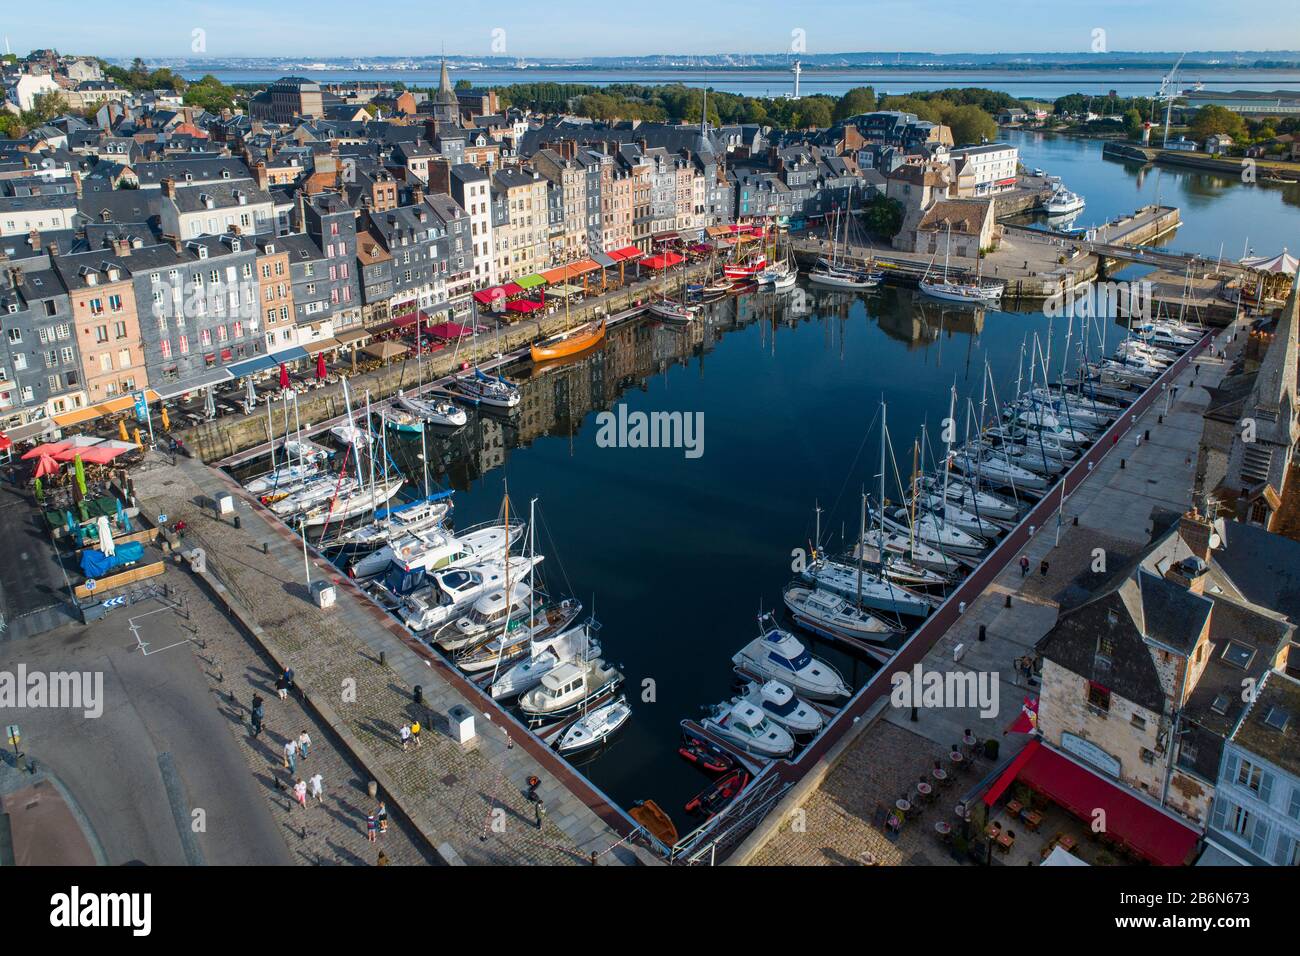 France, Normandie, vue aérienne de Honfleur et son port pittoresque, son vieux bassin et le quai Sainte Catherine Banque D'Images